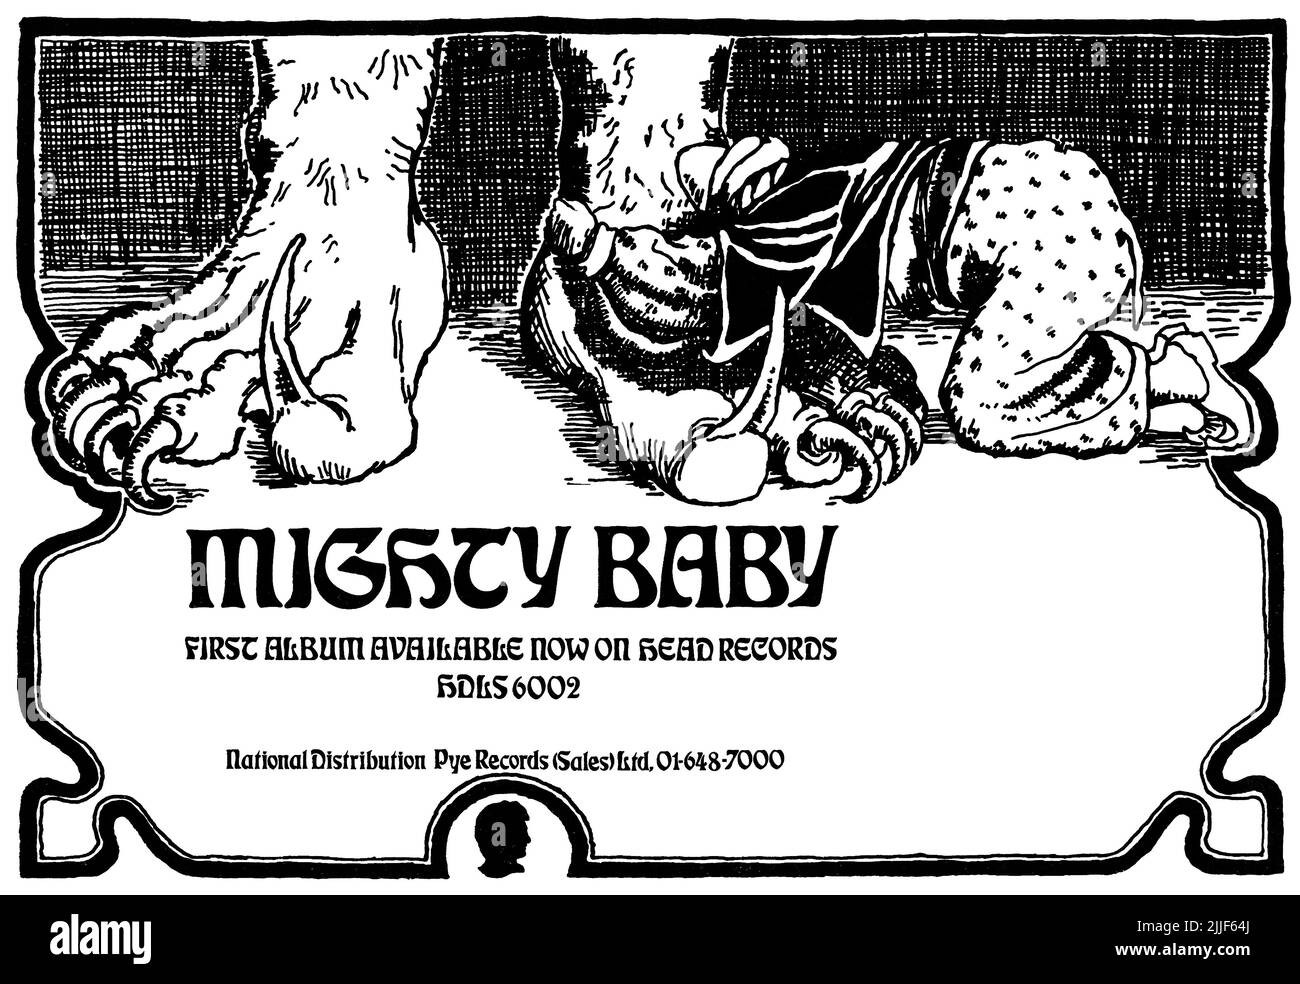 1969 Anuncio británico para el álbum debut de Mighty Baby en Head Records. Foto de stock